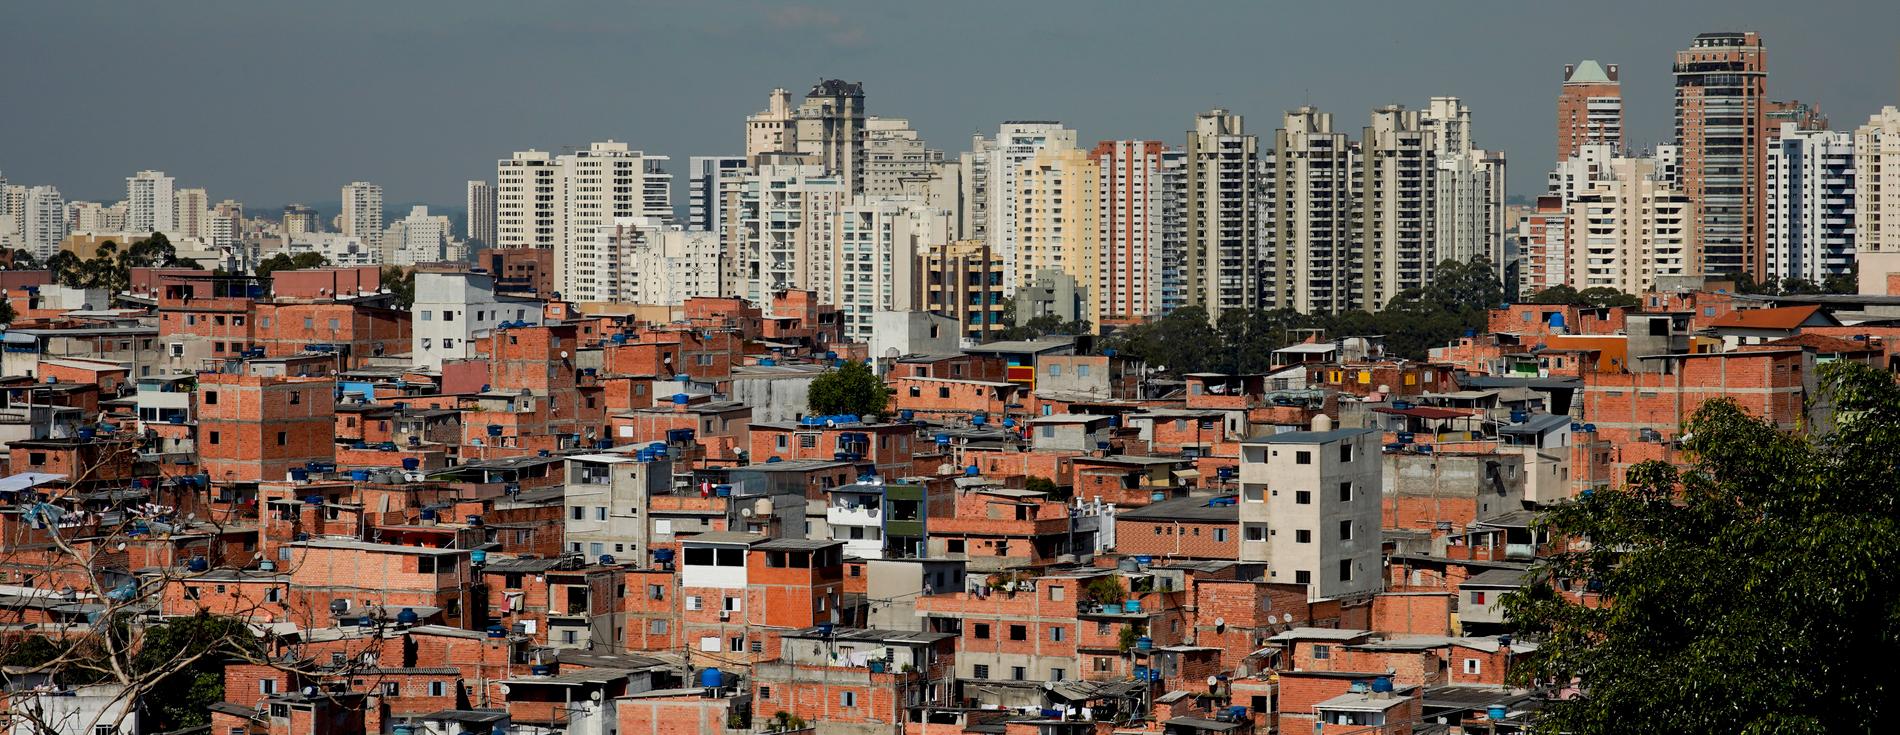 Nio personer trampades ihjäl vid kalabalik i São Paulo-favelan Paraisópolis, som syns i förgrunden på bilden. Arkivbild.